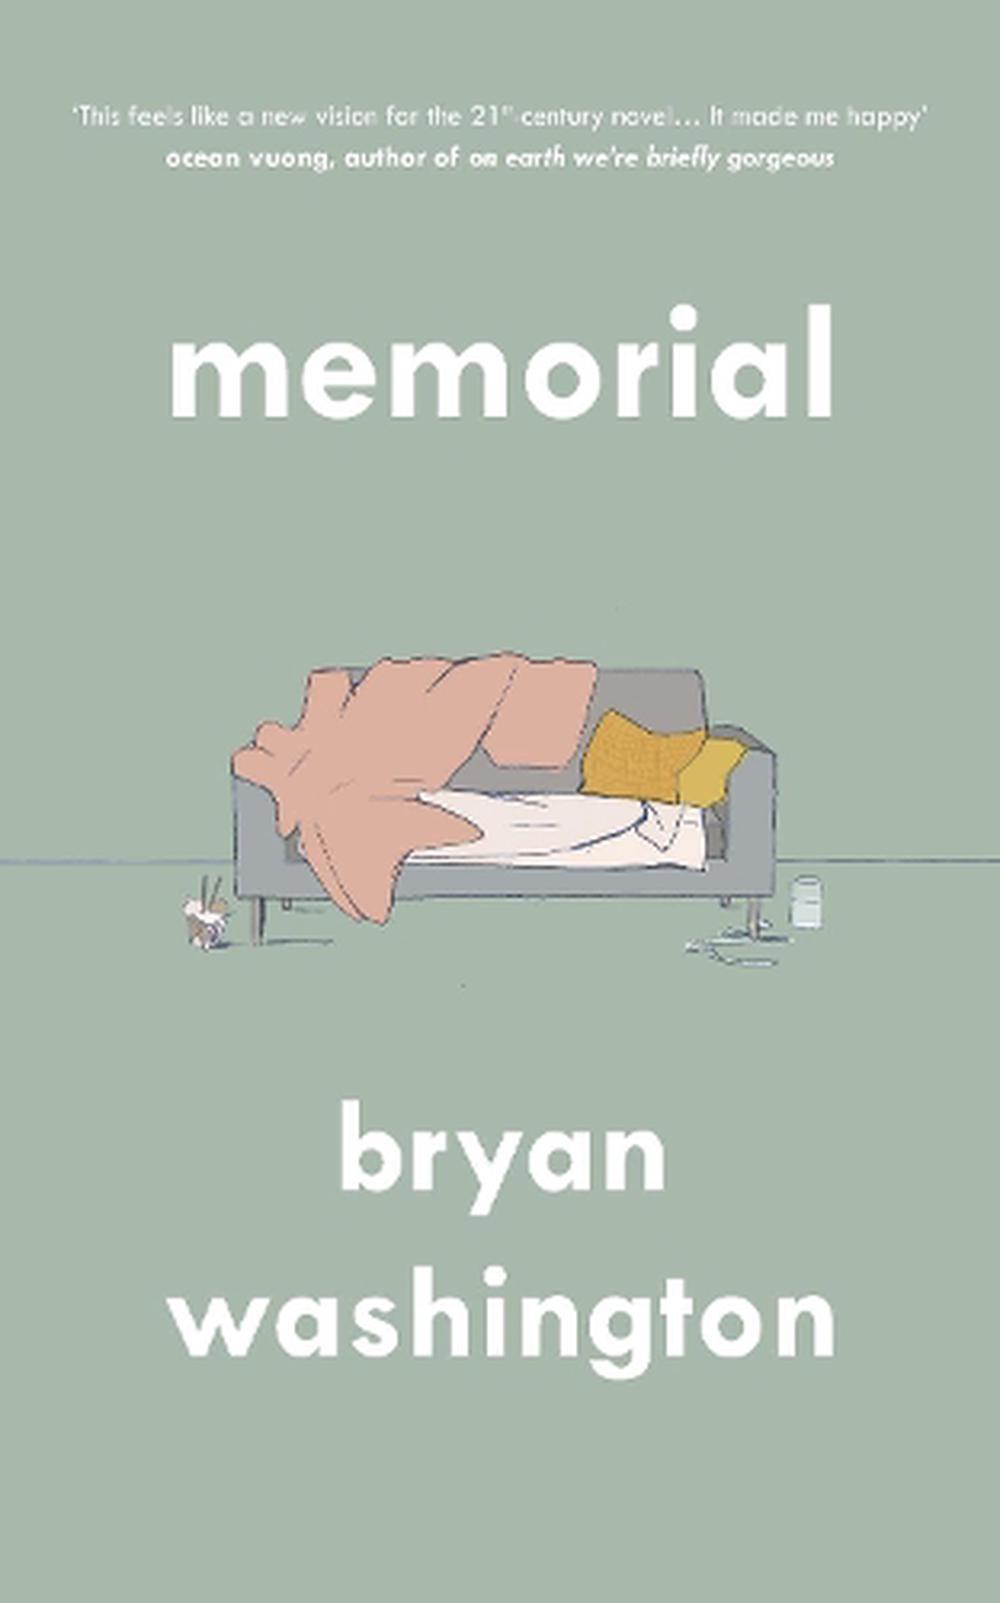 bryan washington memorial